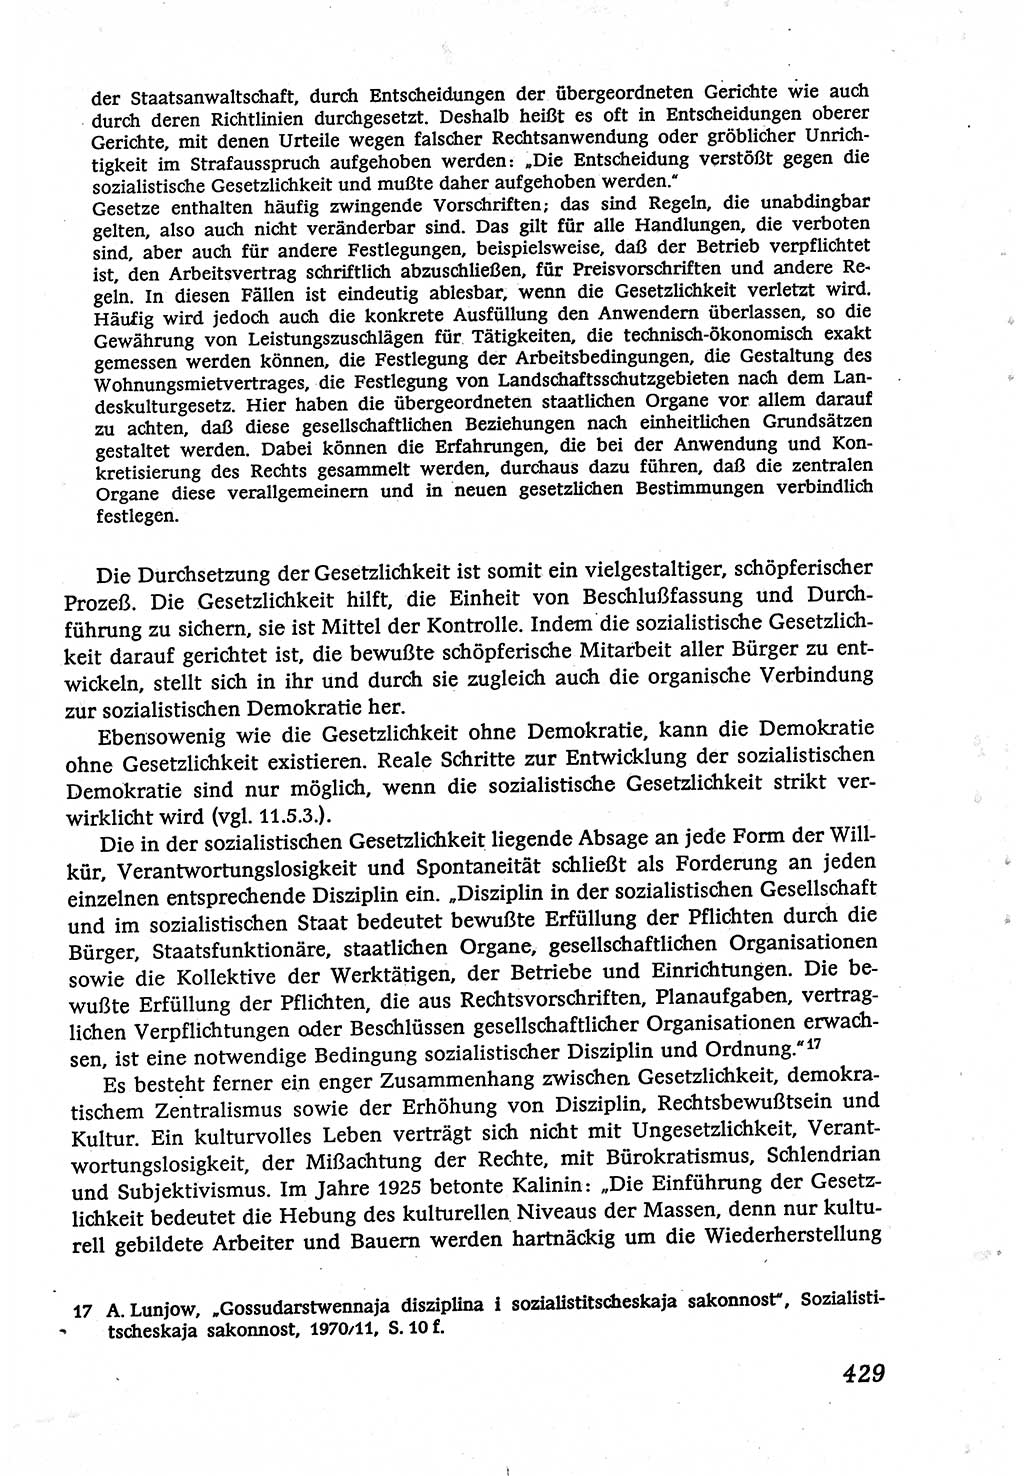 Marxistisch-leninistische (ML) Staats- und Rechtstheorie [Deutsche Demokratische Republik (DDR)], Lehrbuch 1980, Seite 429 (ML St.-R.-Th. DDR Lb. 1980, S. 429)